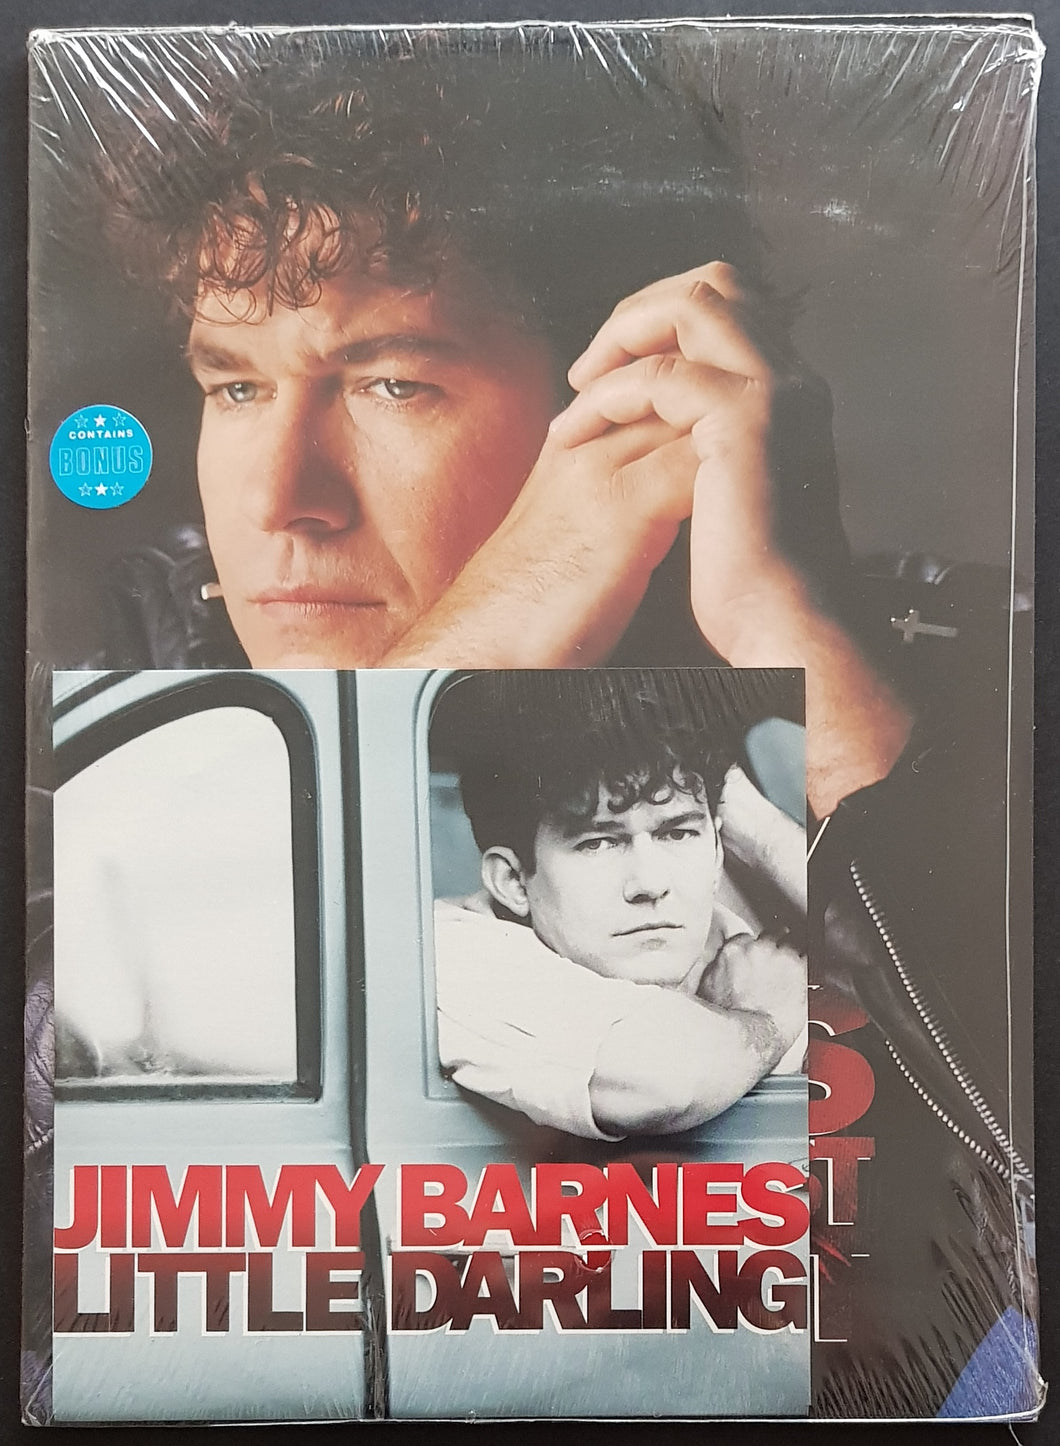 Jimmy Barnes - 1990 Make It Last All Night